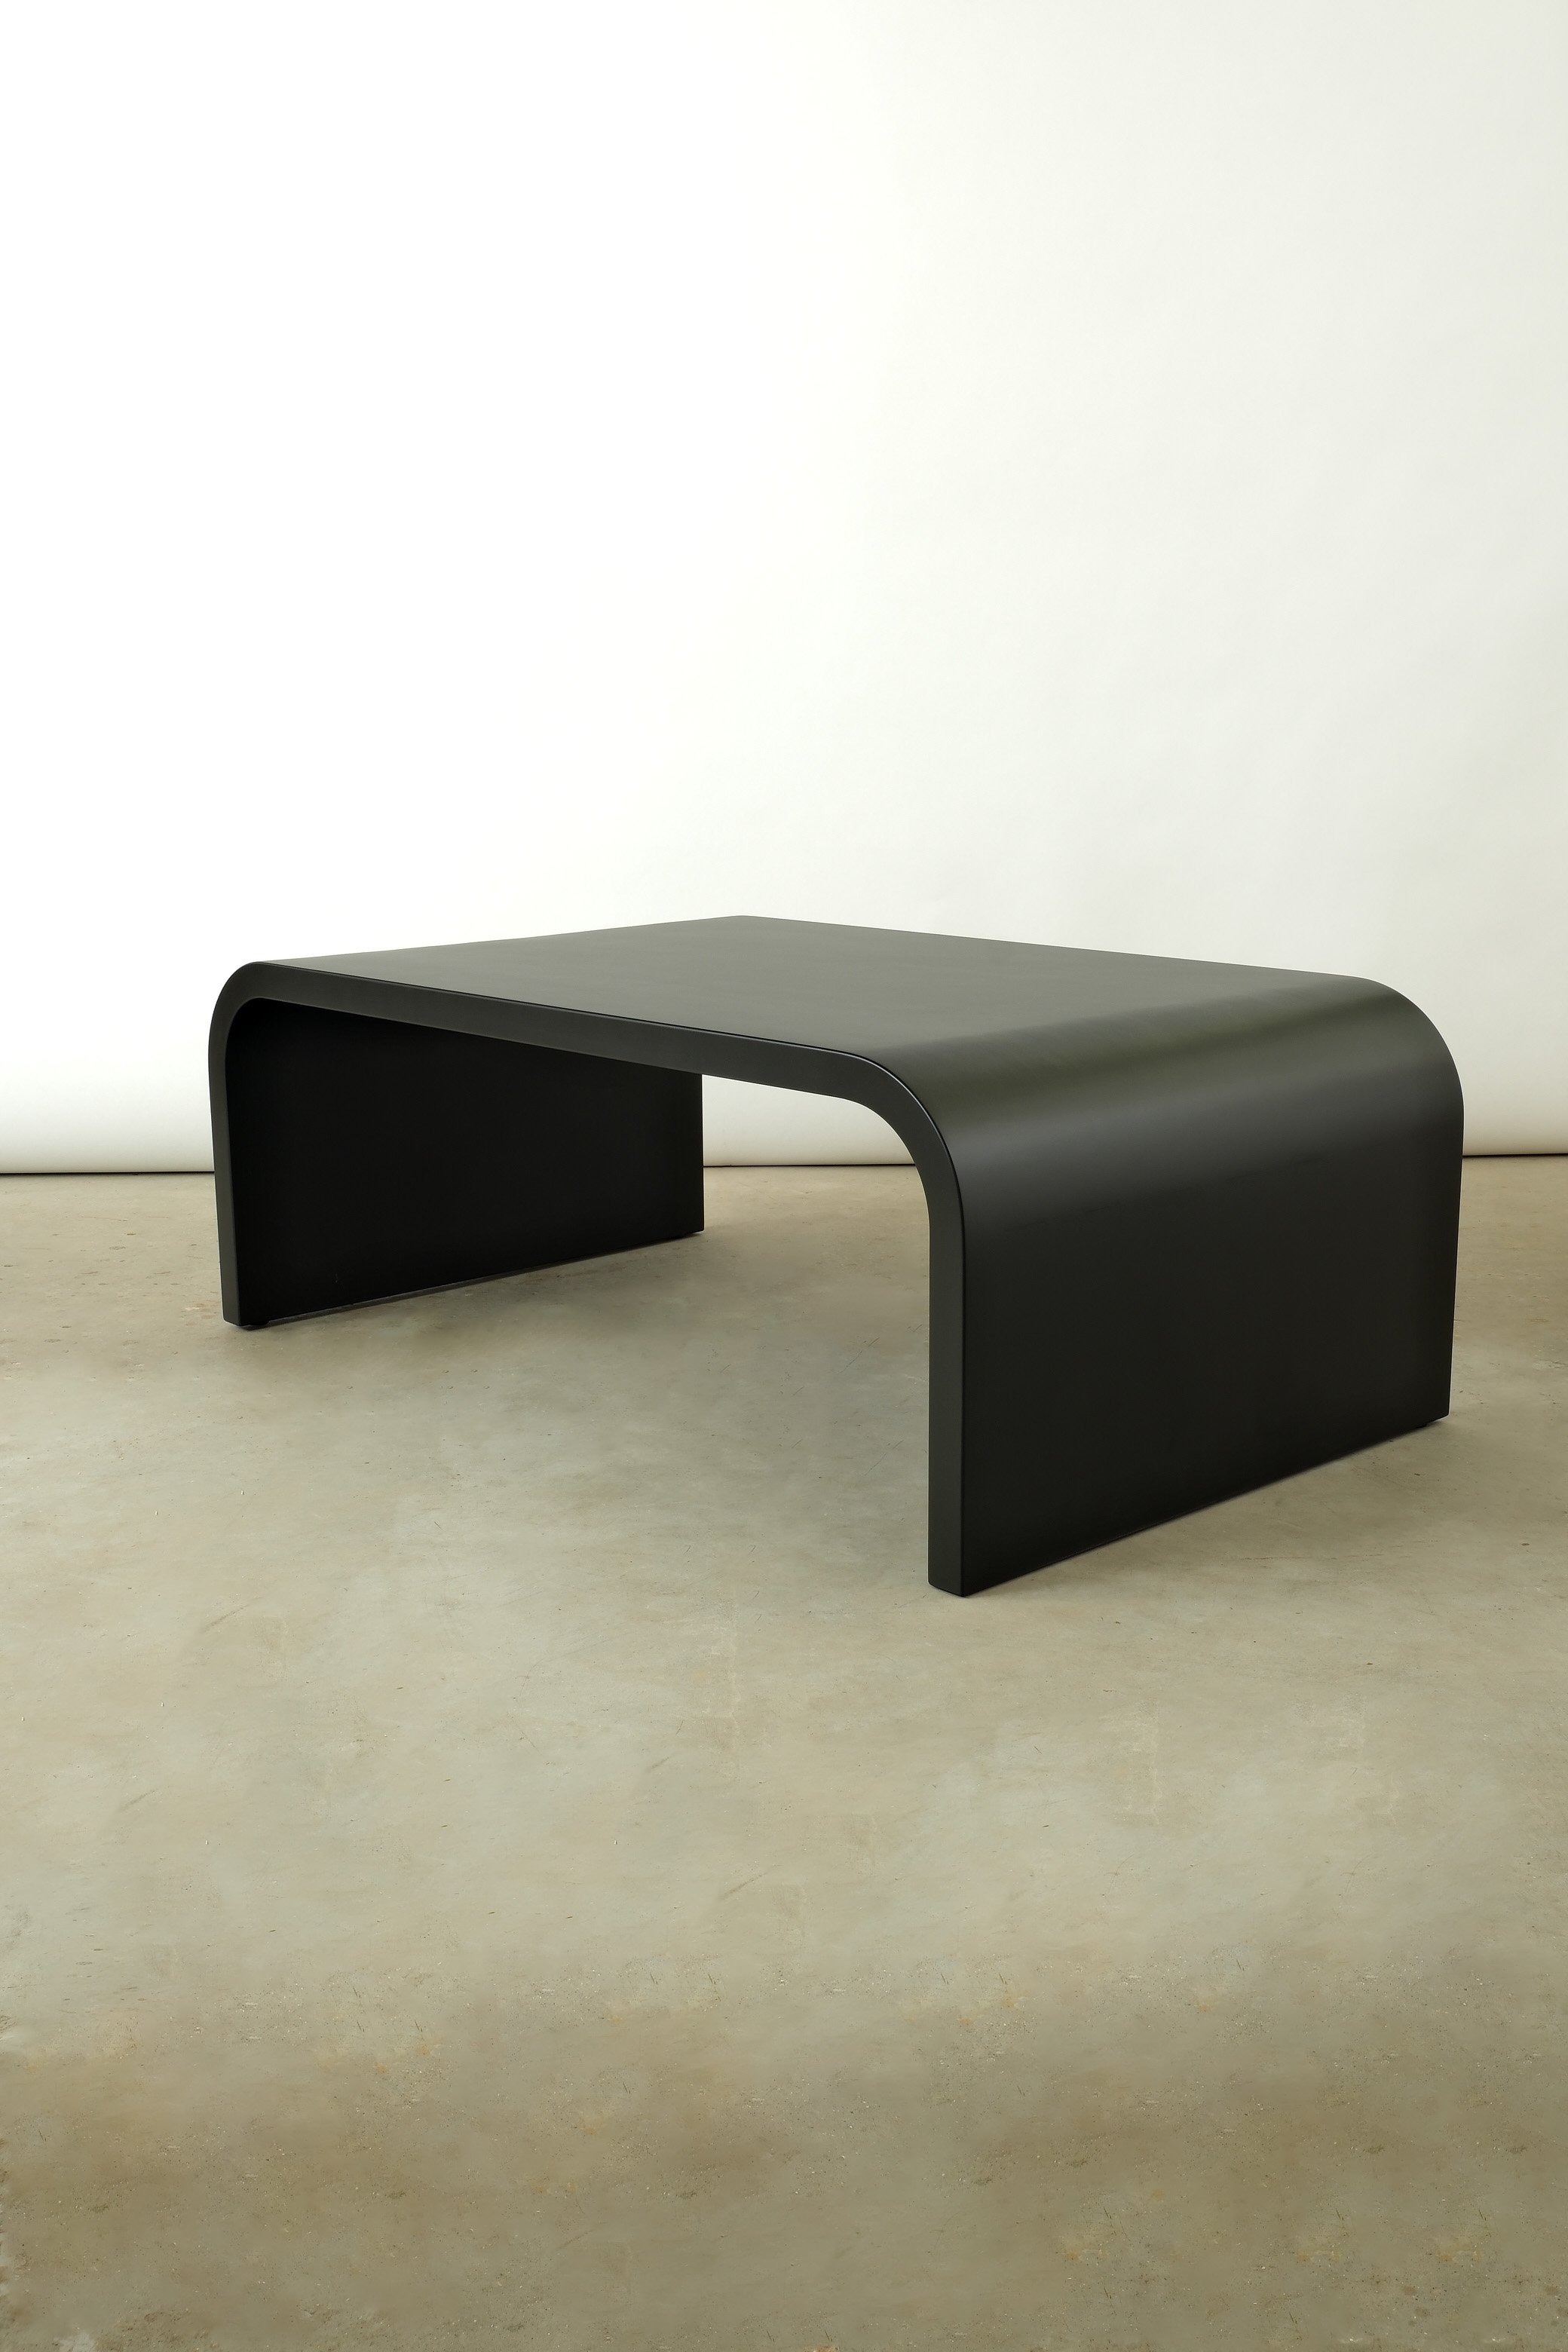 tenet low table in black 3:4 view.JPG